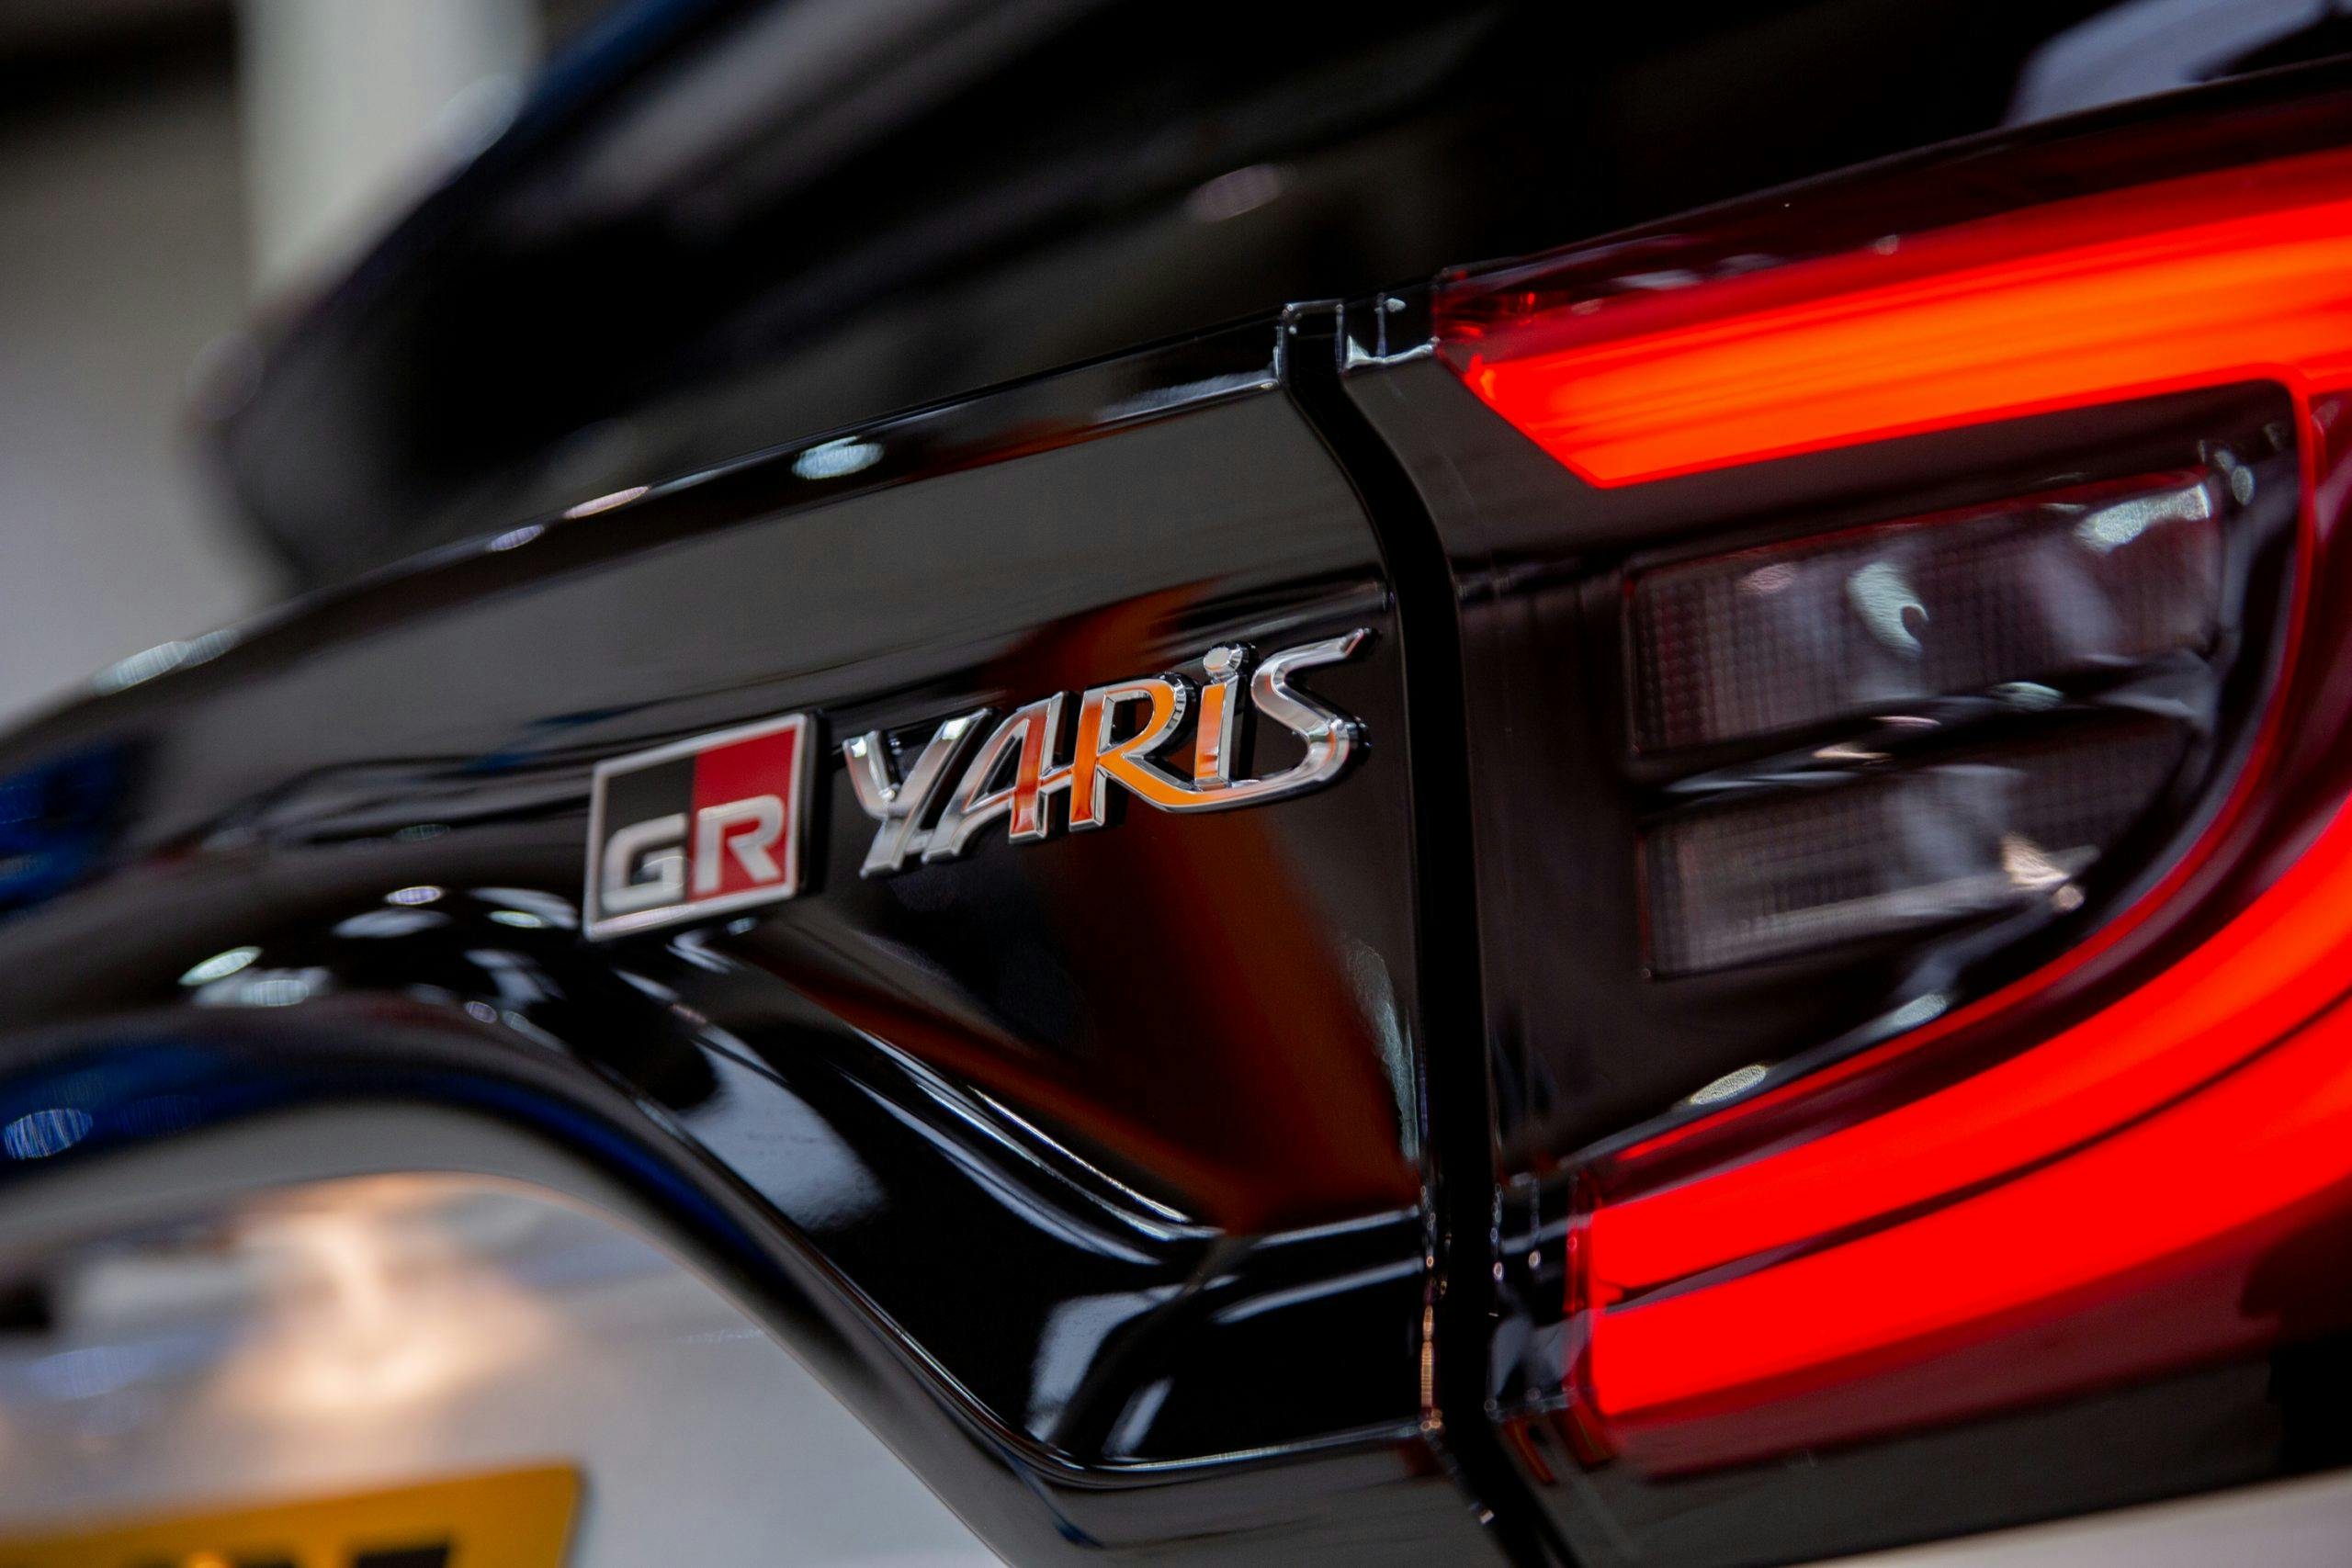 GR Toyota Yaris badging